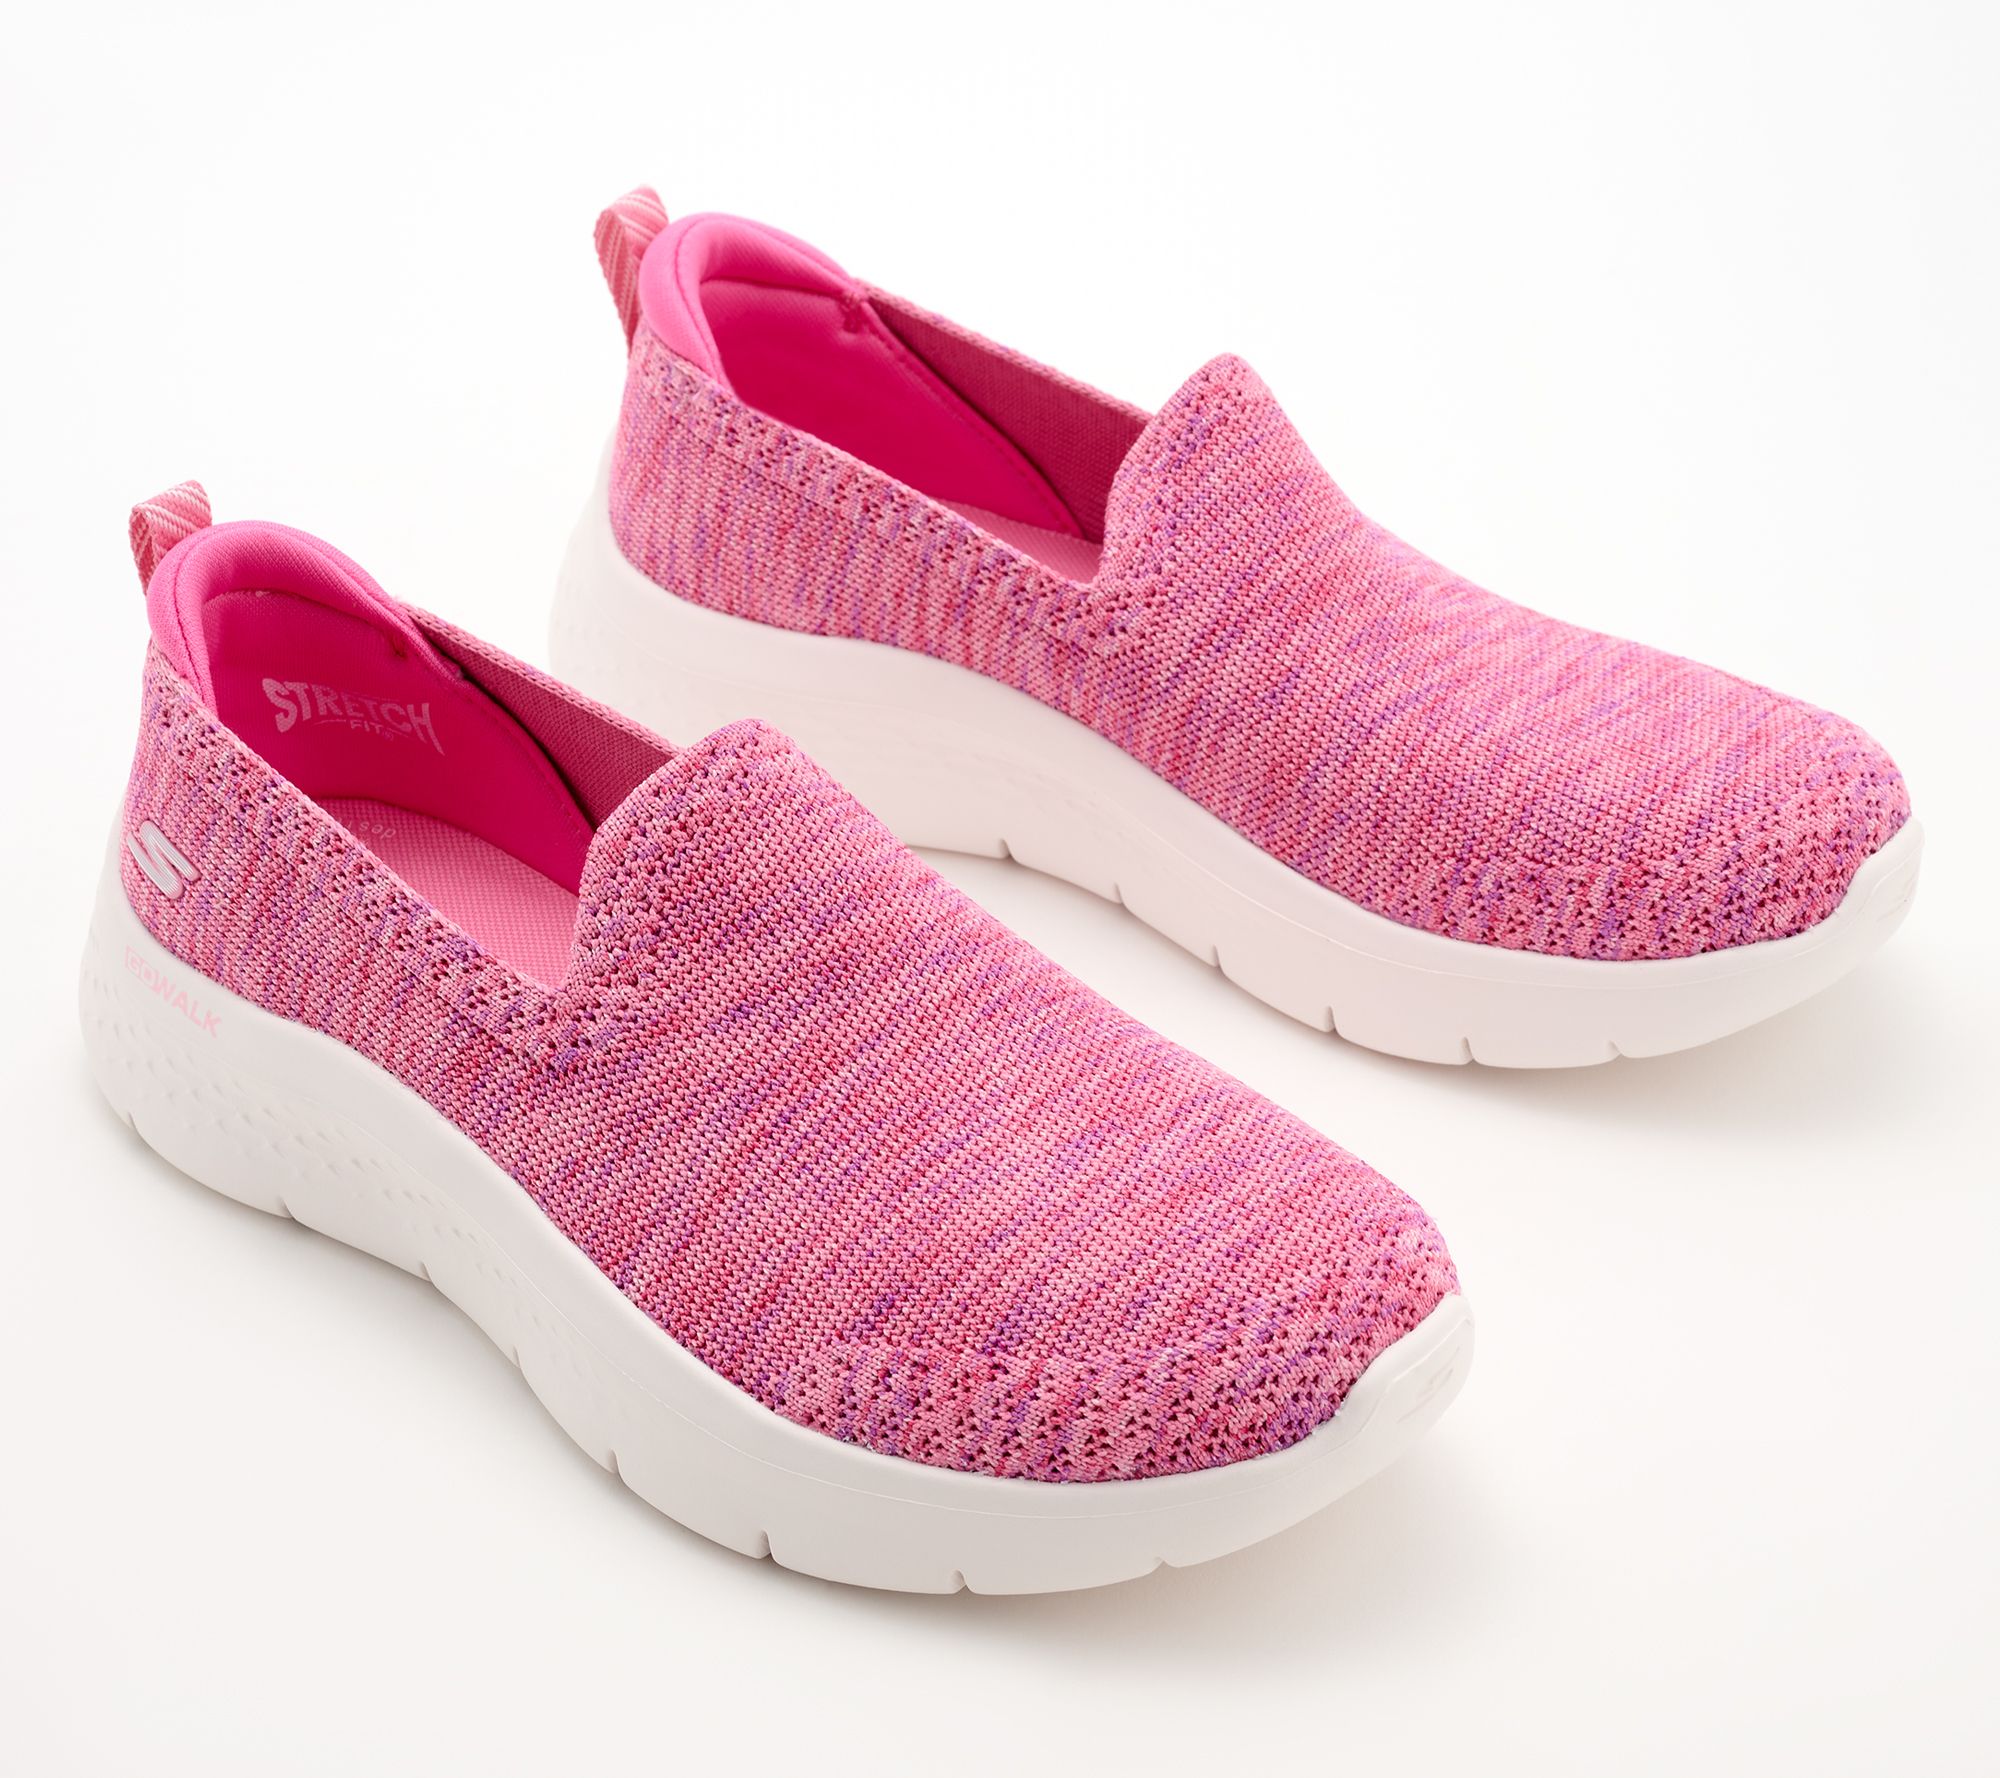 Skechers GOwalk Flex Arch Fit Vegan Washable Knit Sandals